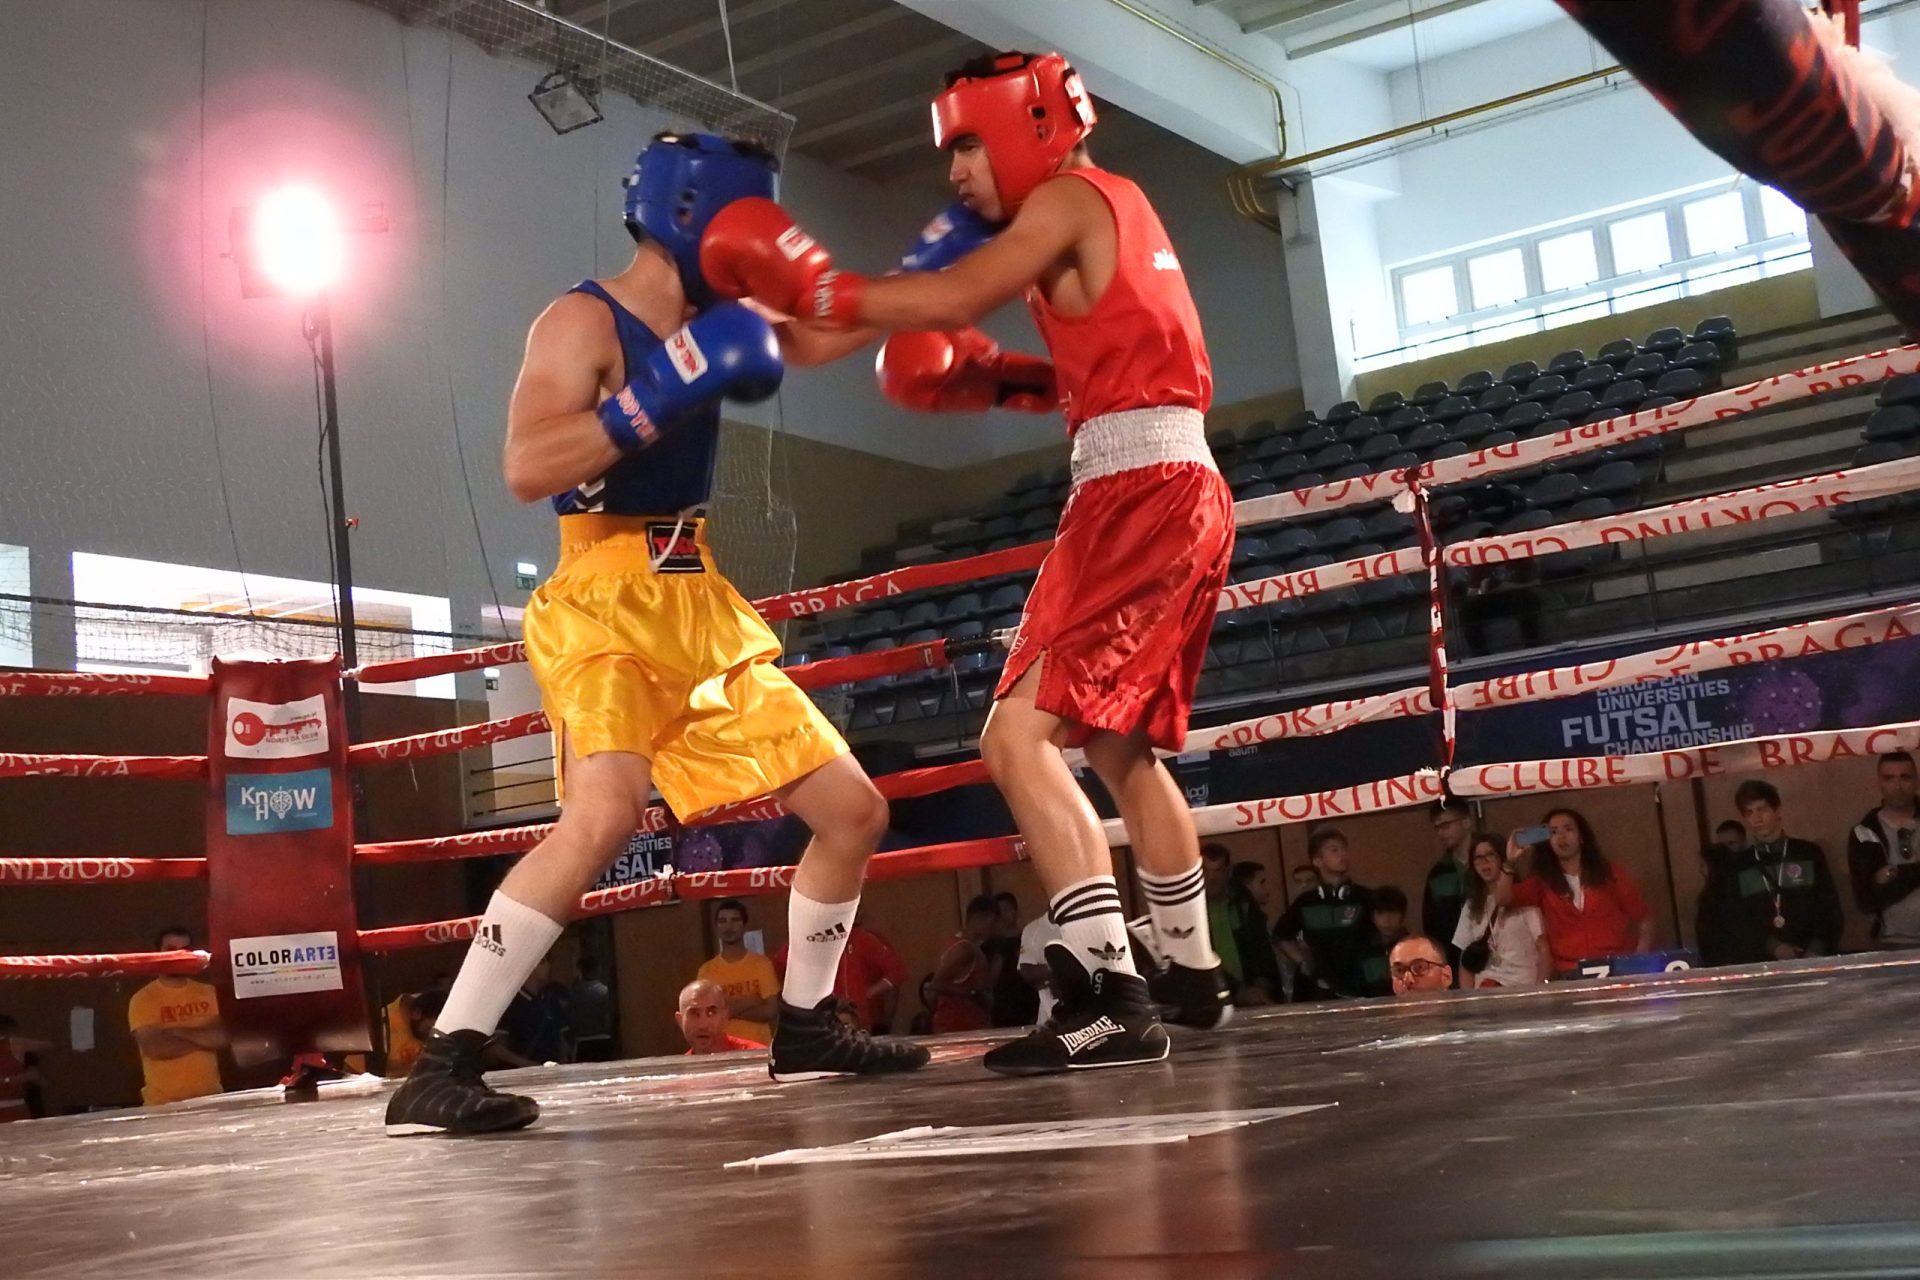 Braga Open Boxing promoveu o boxe olímpico